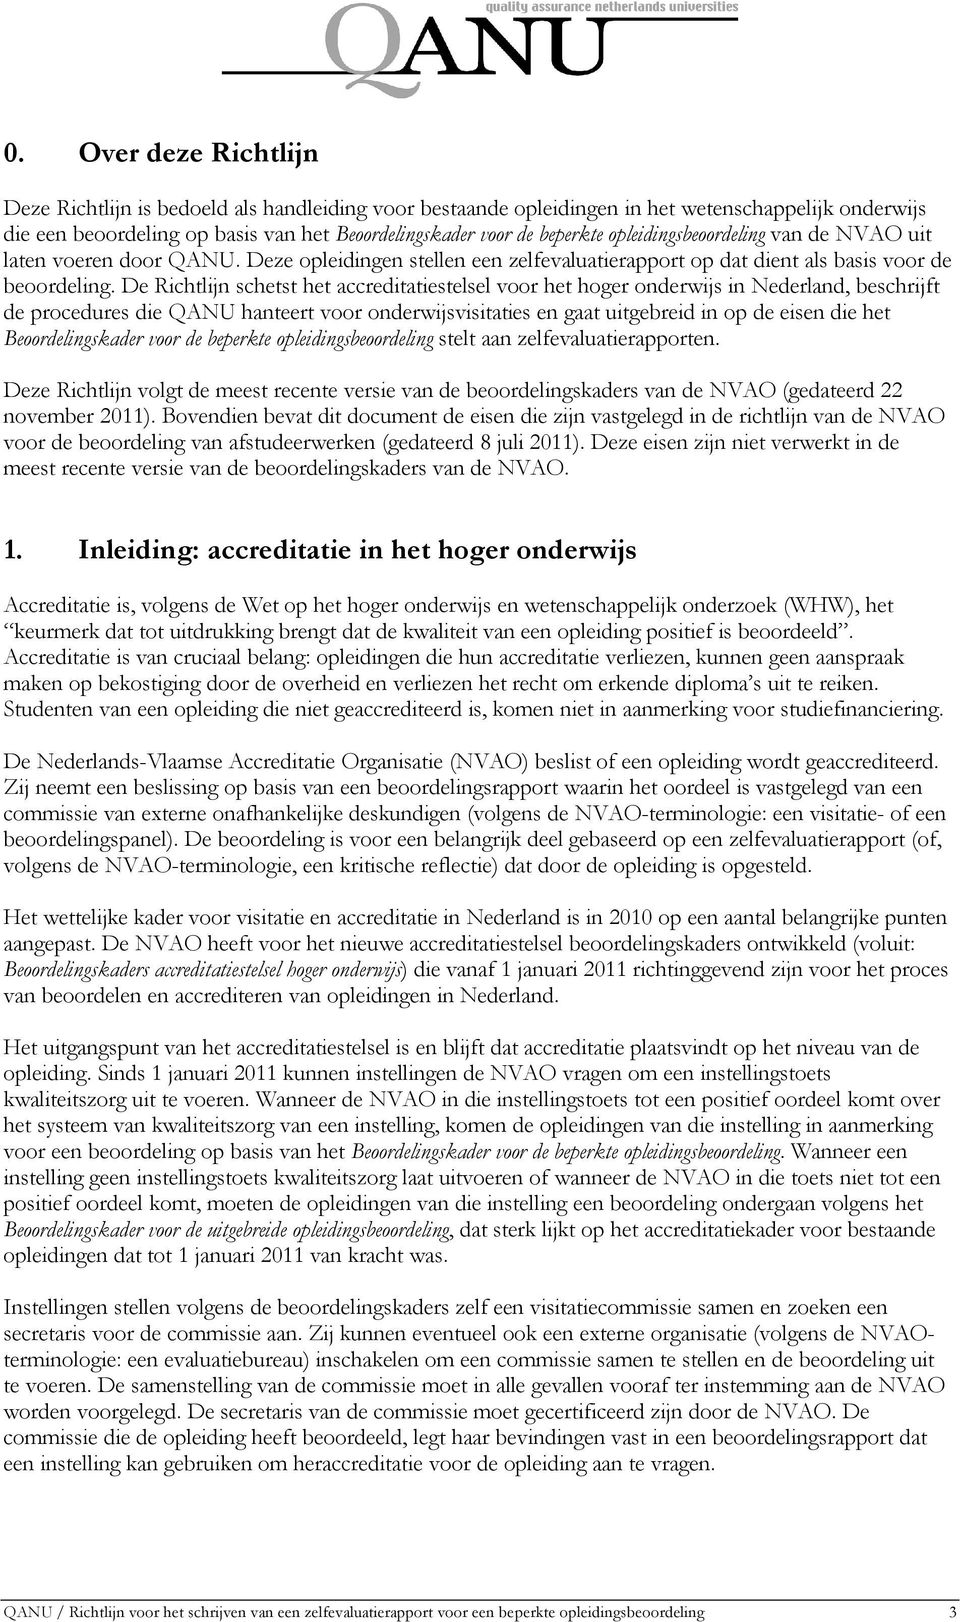 De Richtlijn schetst het accreditatiestelsel voor het hoger onderwijs in Nederland, beschrijft de procedures die QANU hanteert voor onderwijsvisitaties en gaat uitgebreid in op de eisen die het